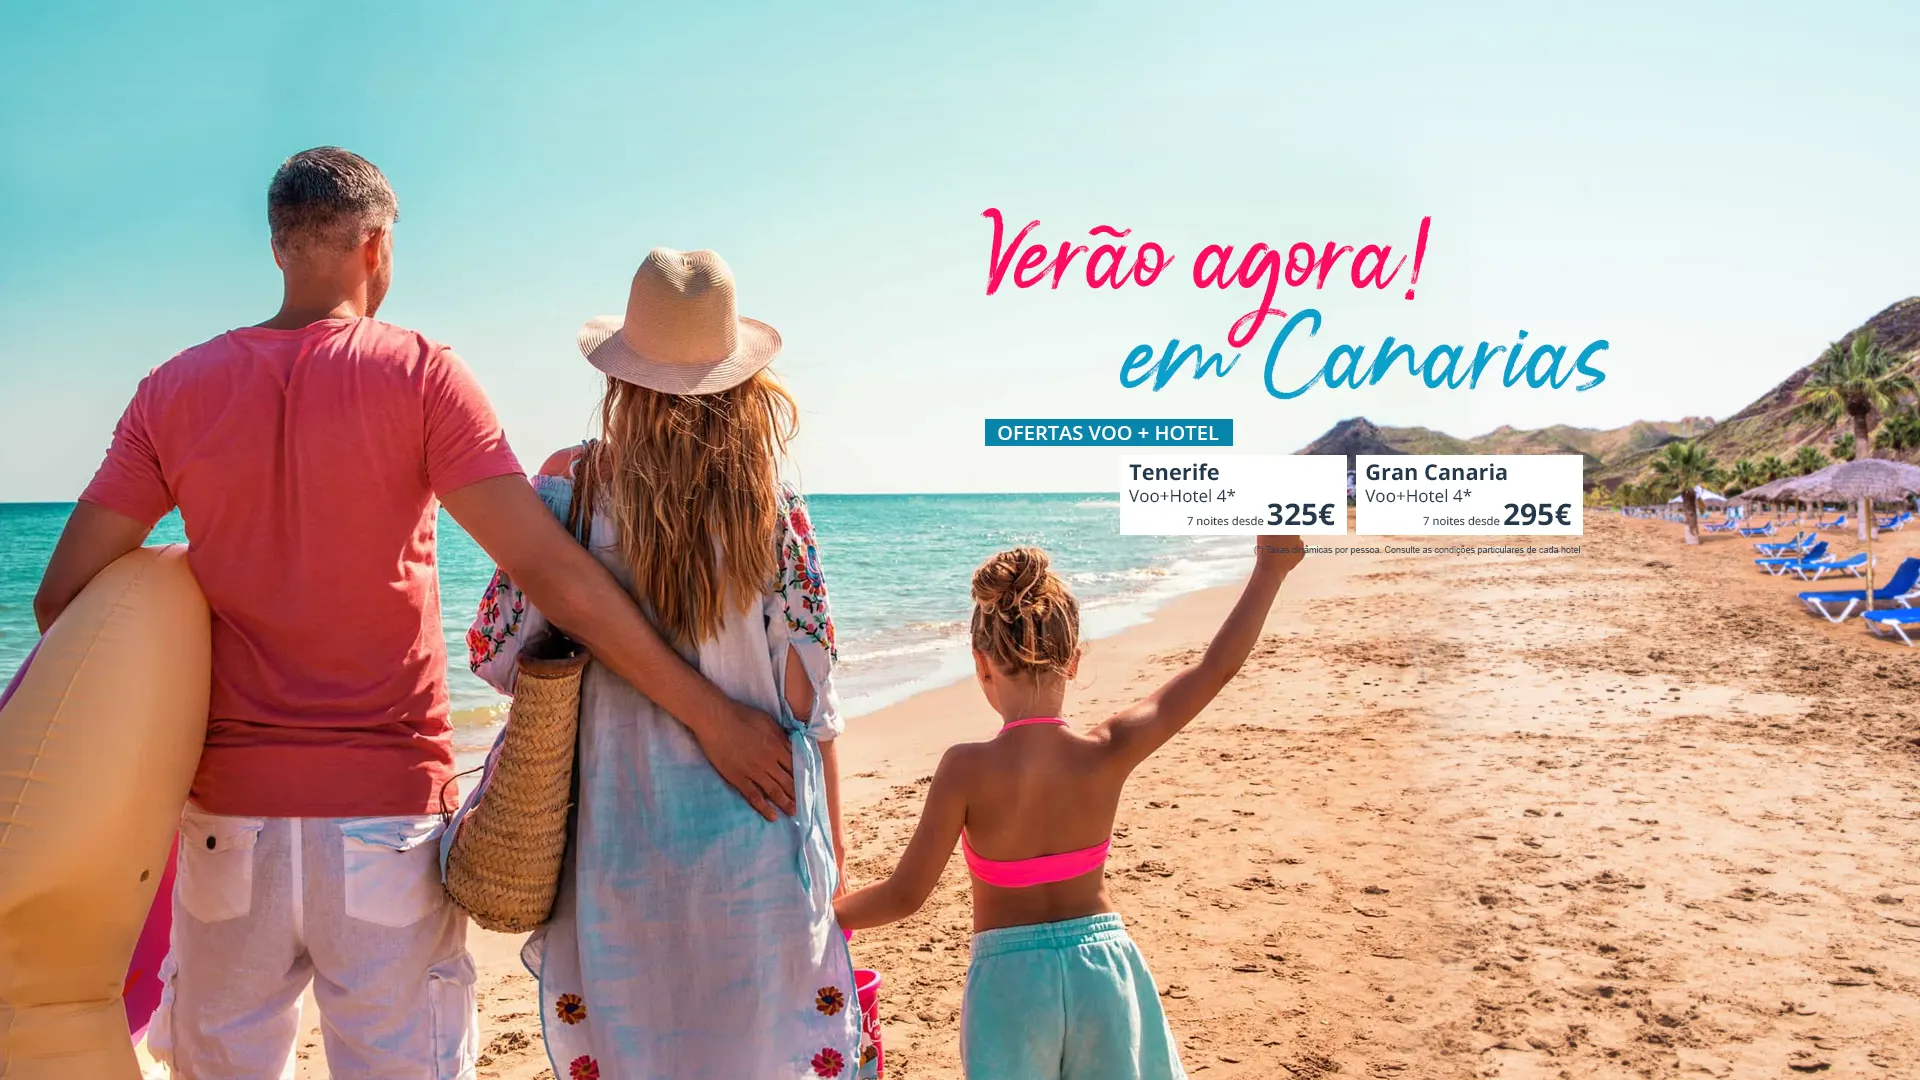 Vuelo+Hotel Canarias copia